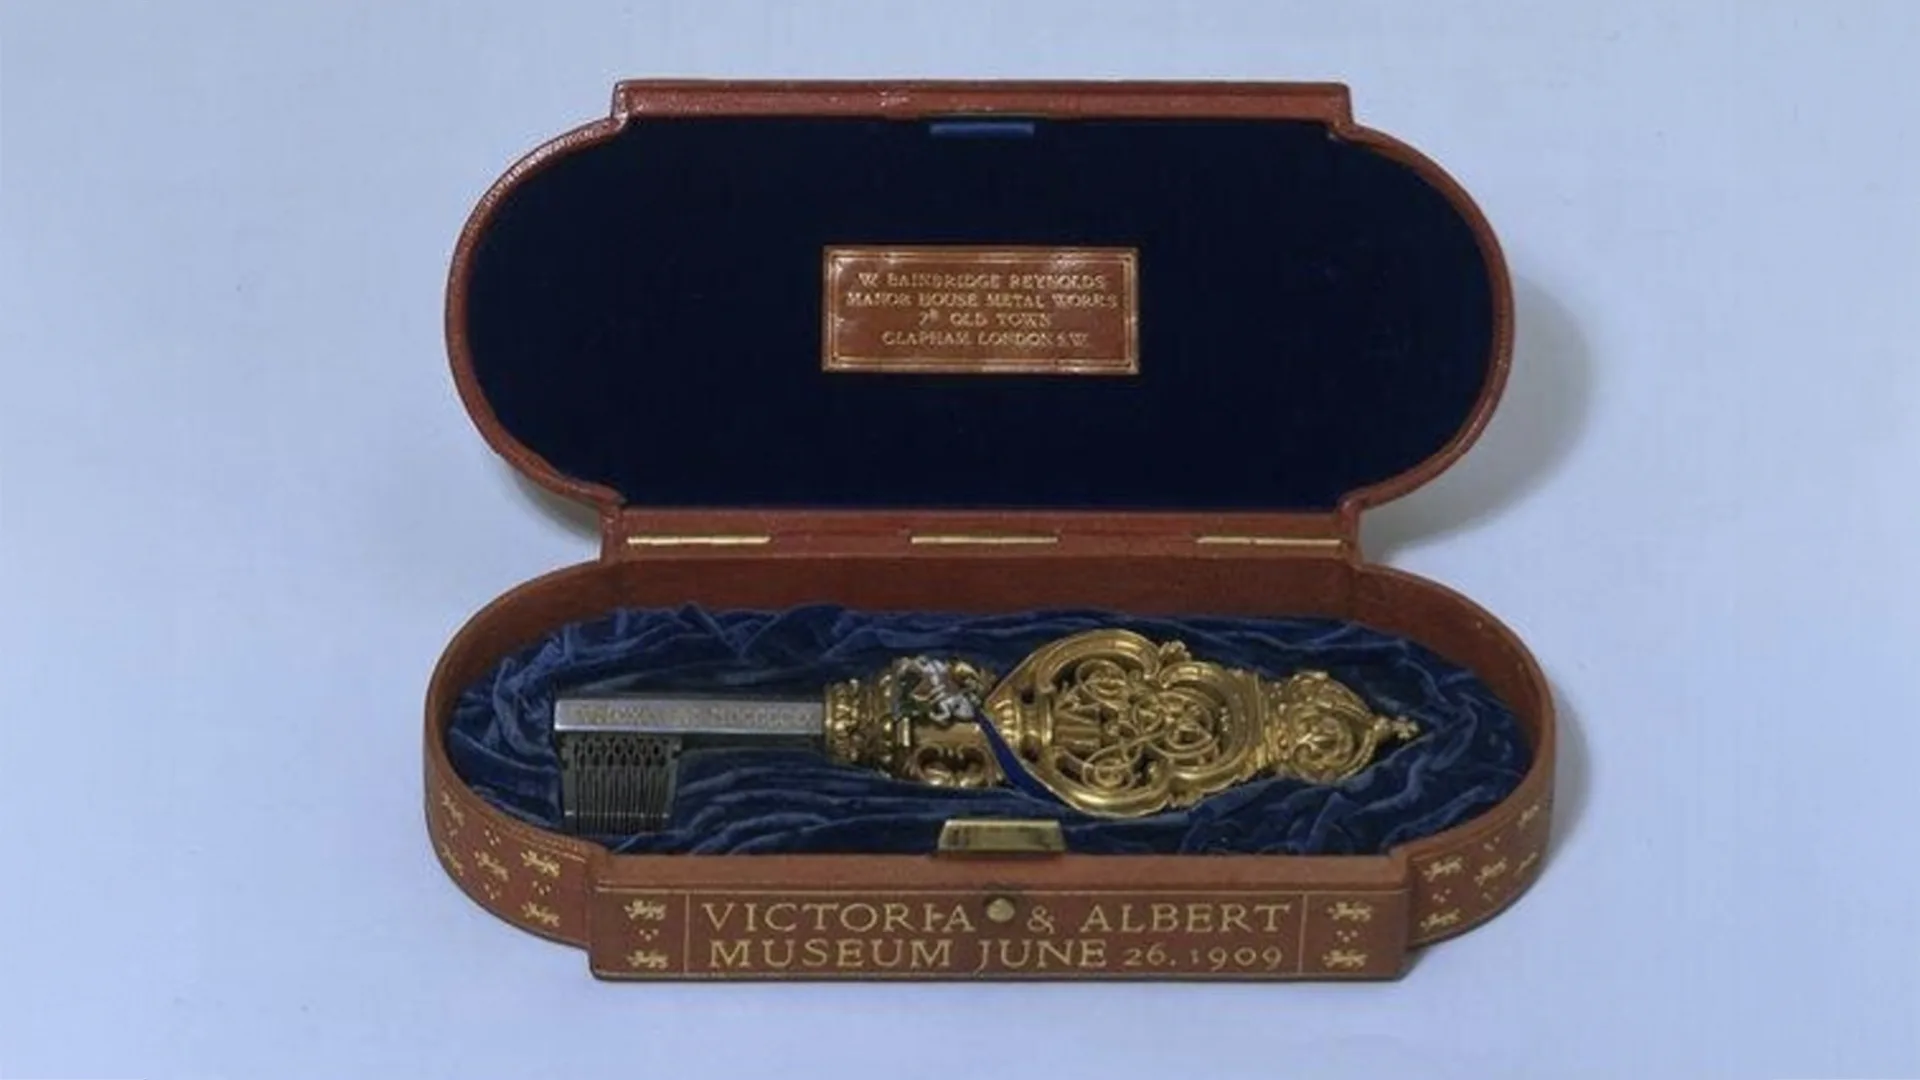 A fancy key in a wooden box